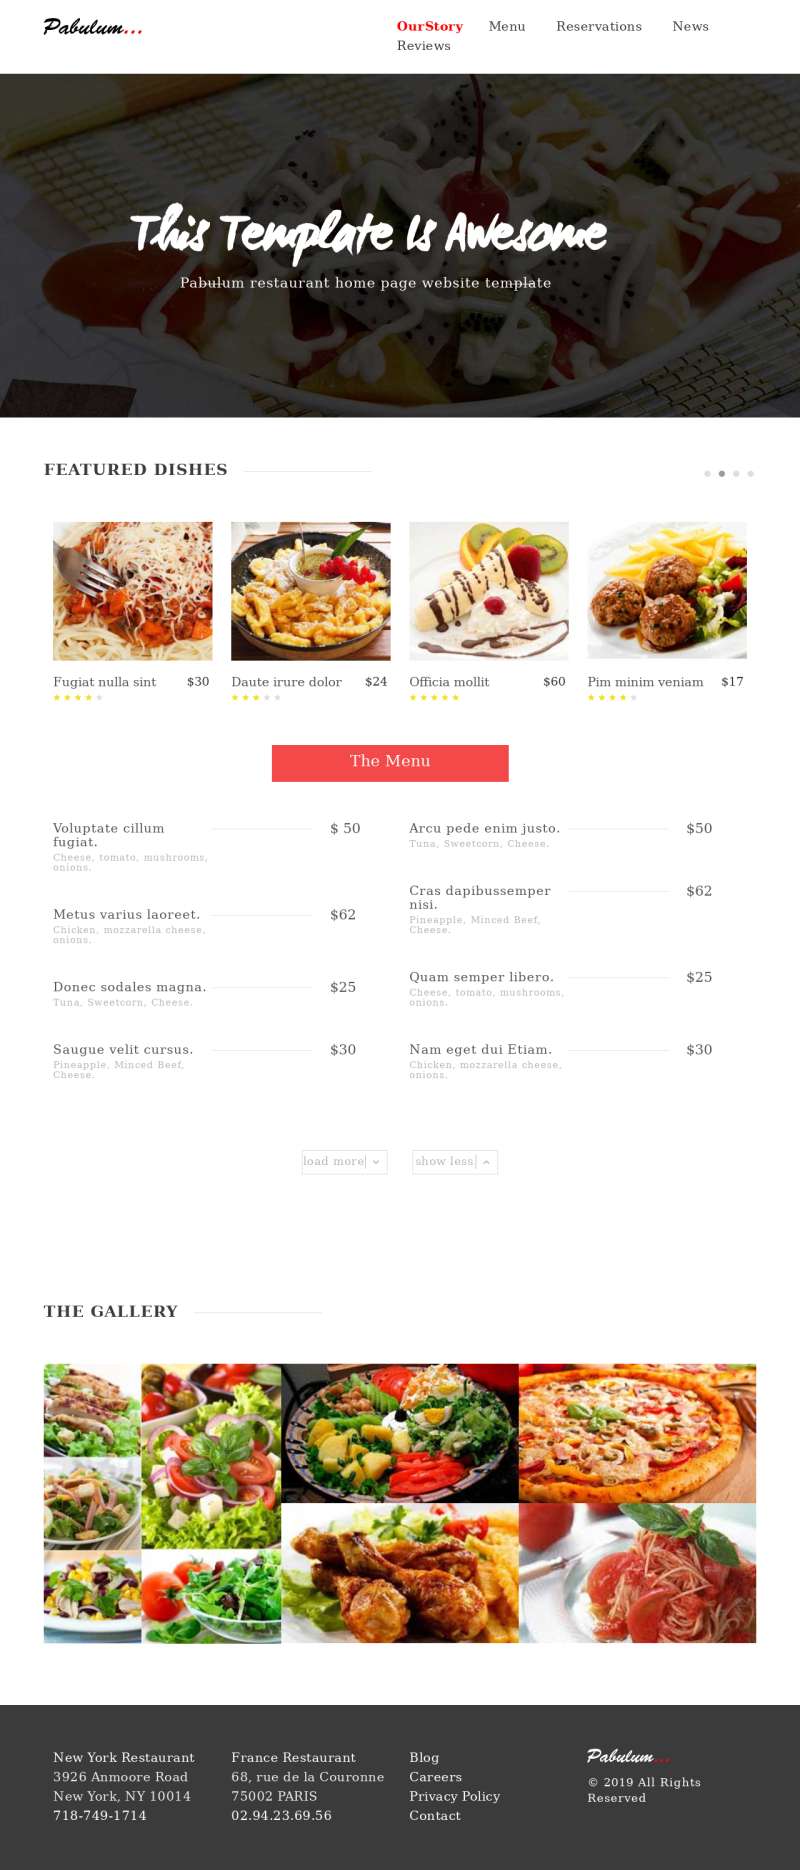 餐飲行業餐廳菜單服務展示網站html模板